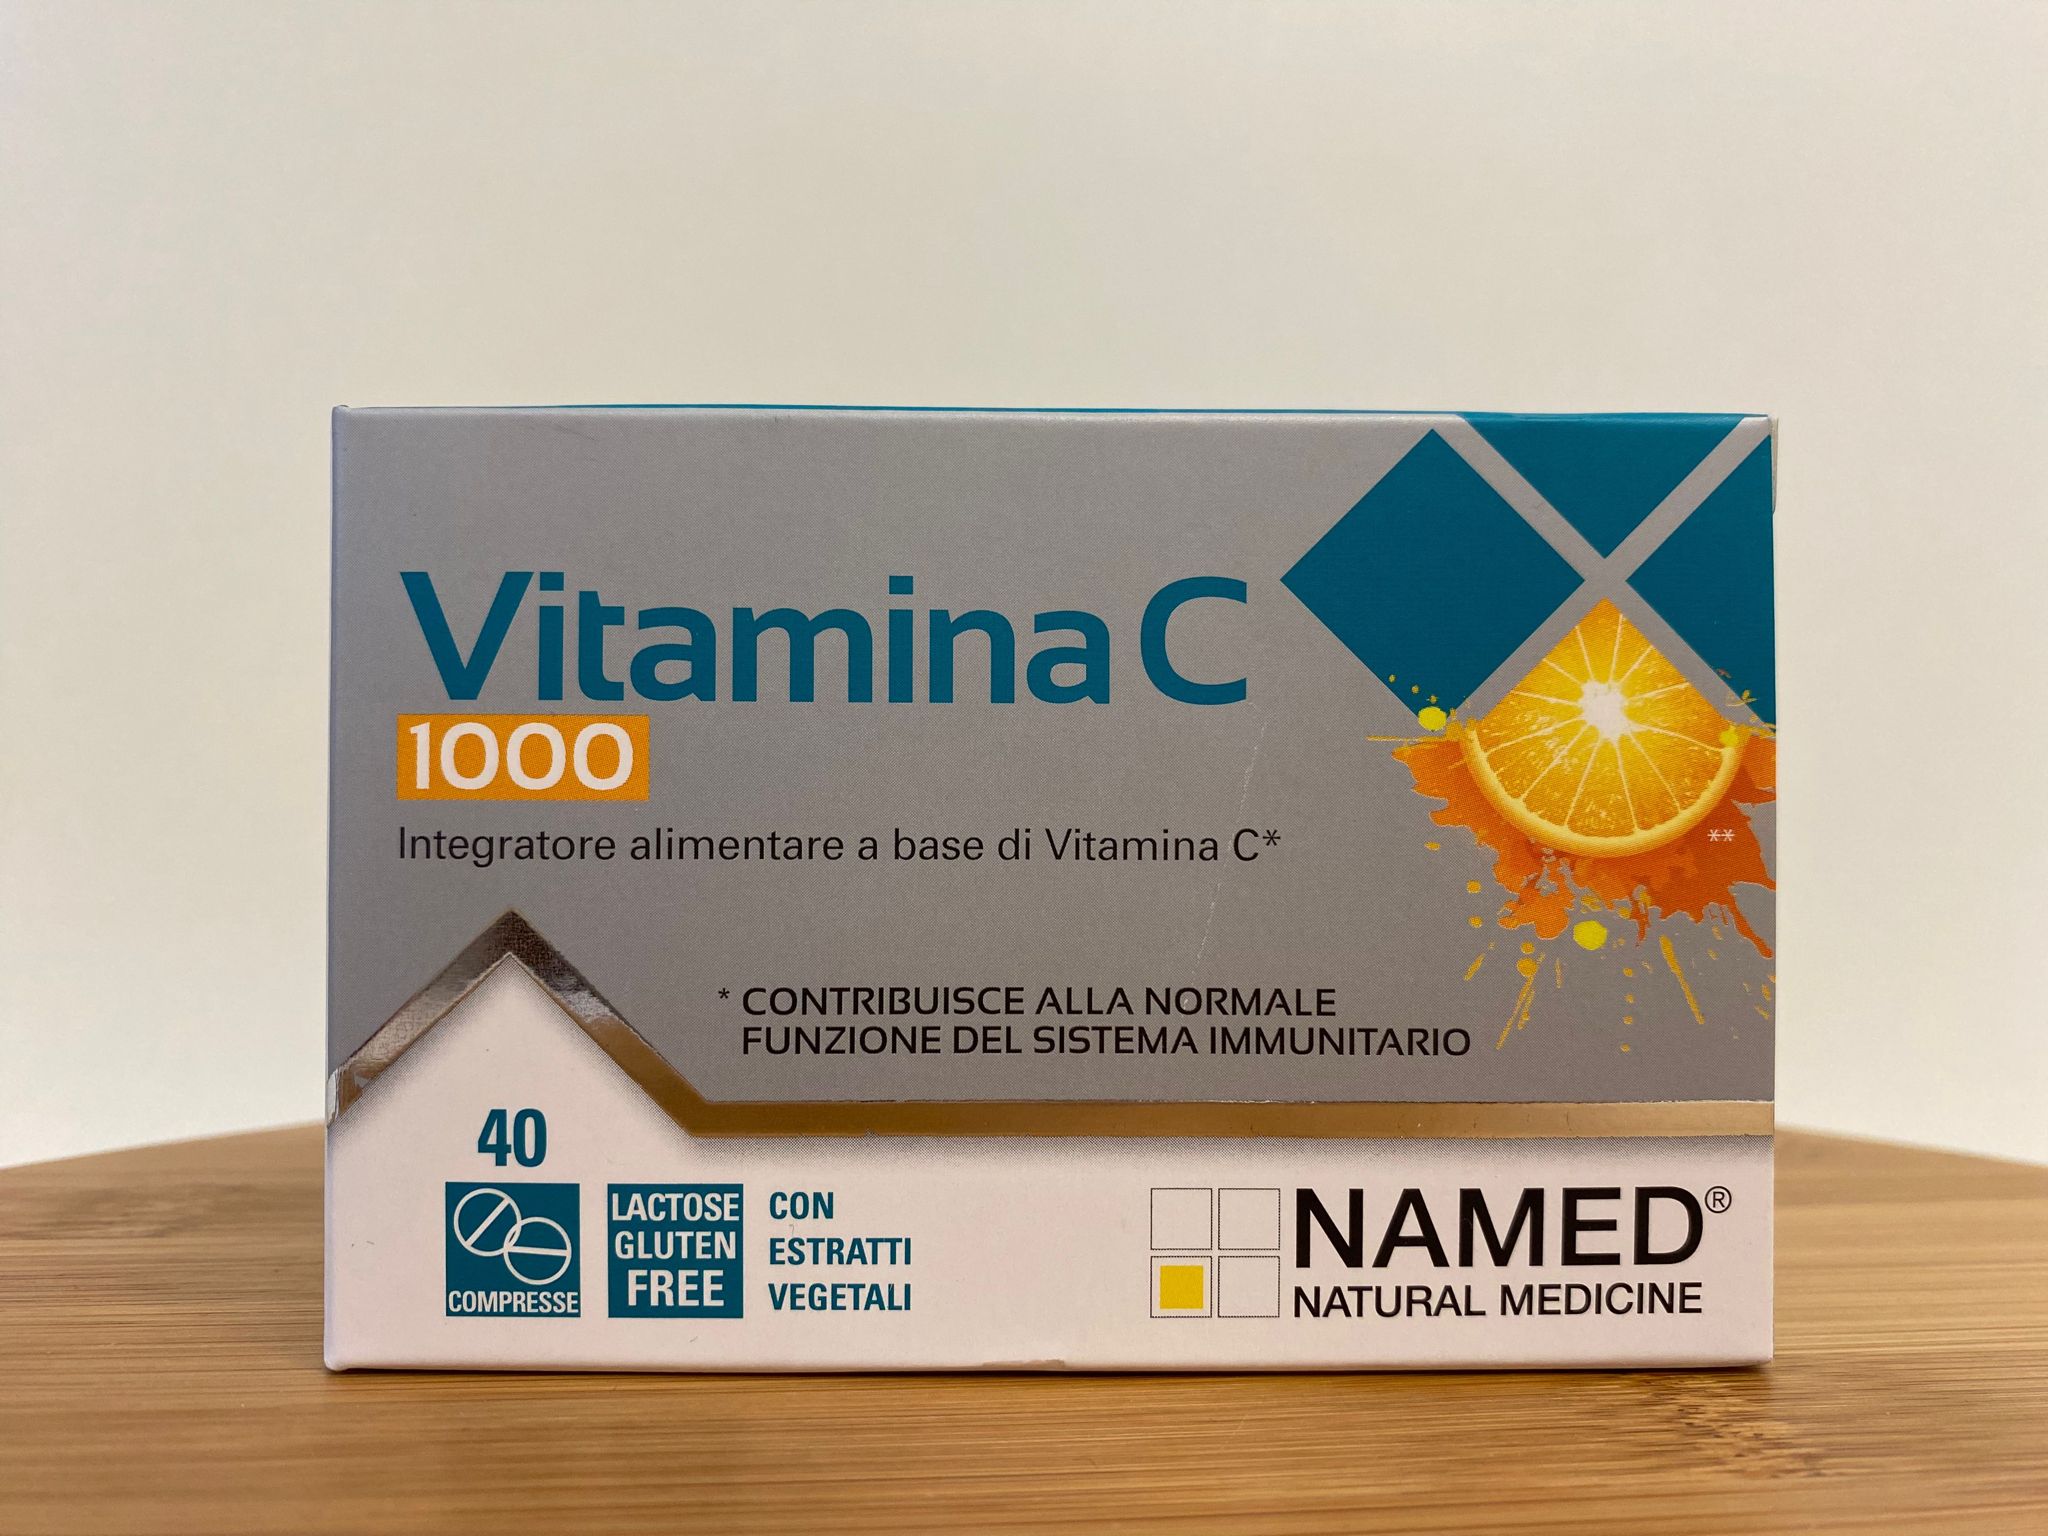 Named: Vitamina C